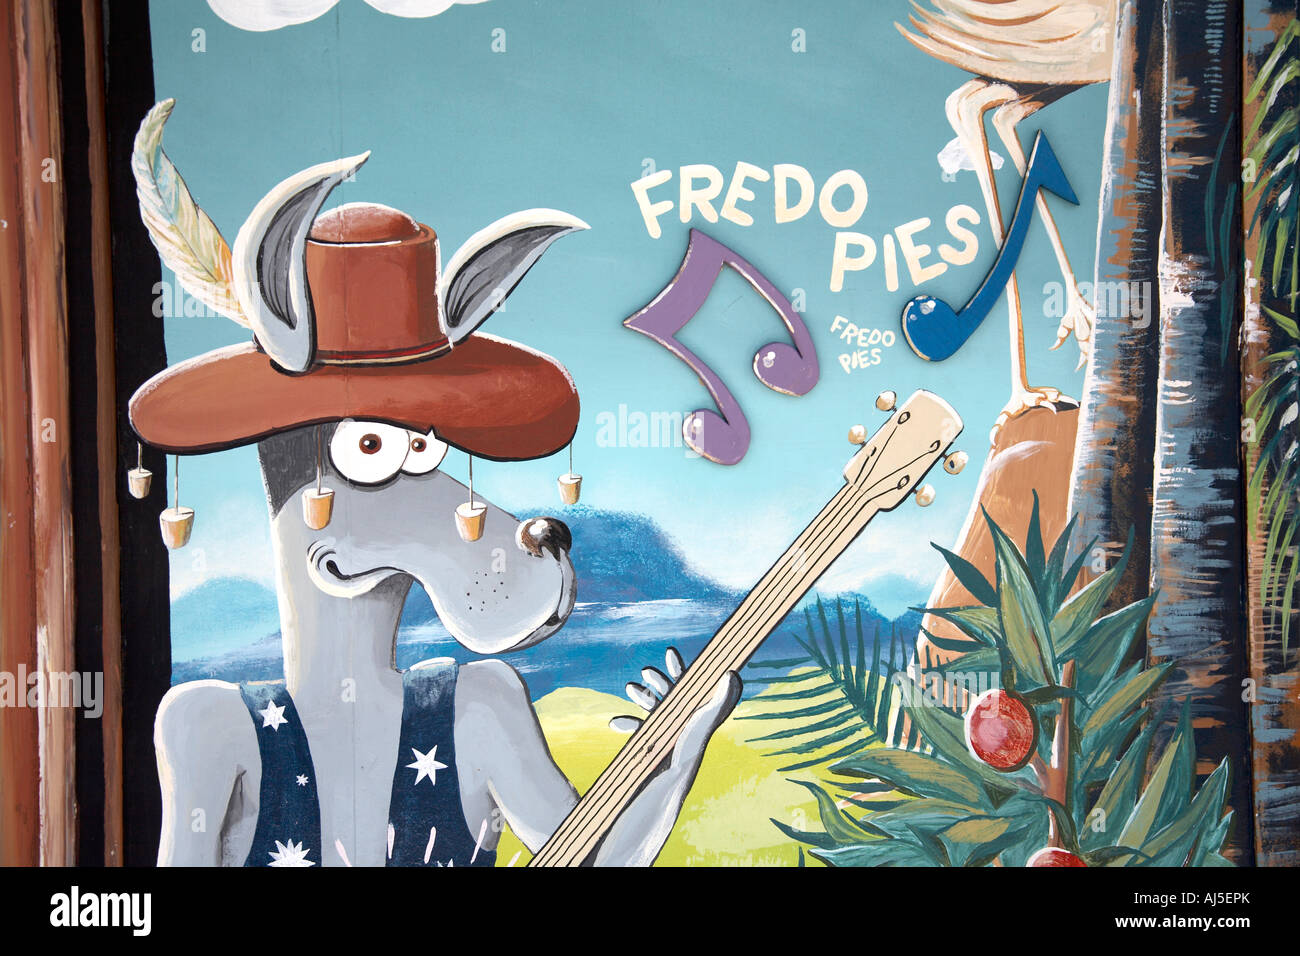 Tartes Fredo boutique avec caricature fresque à Frederickton Nouvelle Galles du sud , Australie Banque D'Images